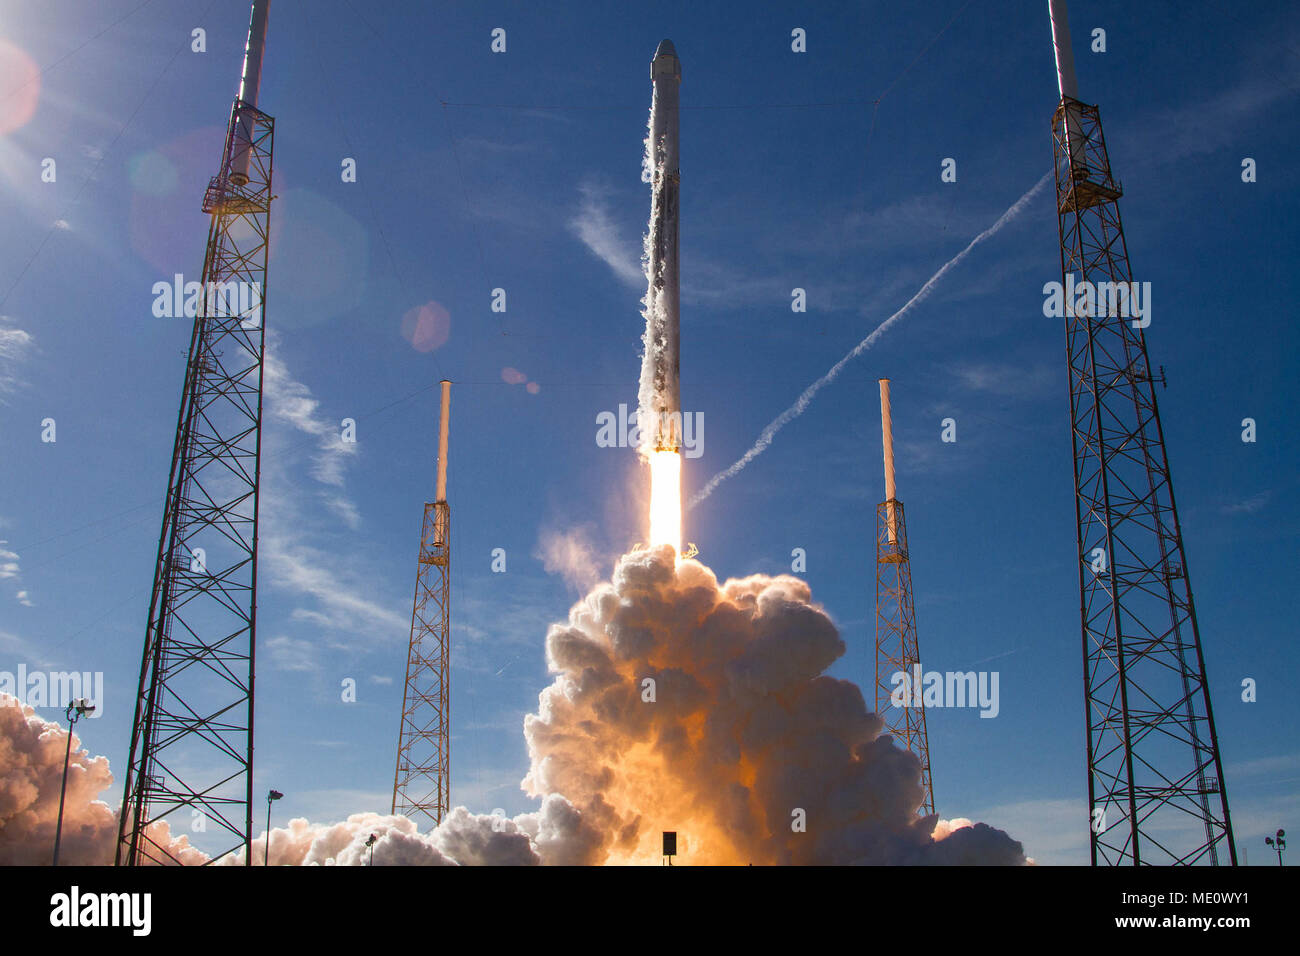 Gli Stati Uniti Air Force 45th spazio ala SpaceX supportato il successo del lancio della NASA commerciale della missione di rifornimento 13 a bordo di un Falcon 9 razzo da complessi di lancio 40 alla Cape Canaveral Air Force Station (CCAFS), Florida, Dic 15, 2017. Essa ha segnato l'ala del XIX lancio dalla gamma orientale, l'ultimo lancio previsto per l'anno. Poco dopo il lancio, il Falcon 9's volo-collaudata primo stadio survoltore è atterrato con successo alla zona di atterraggio 1 al CCAFS. (DoD Foto cortesia di SpaceX) Foto Stock